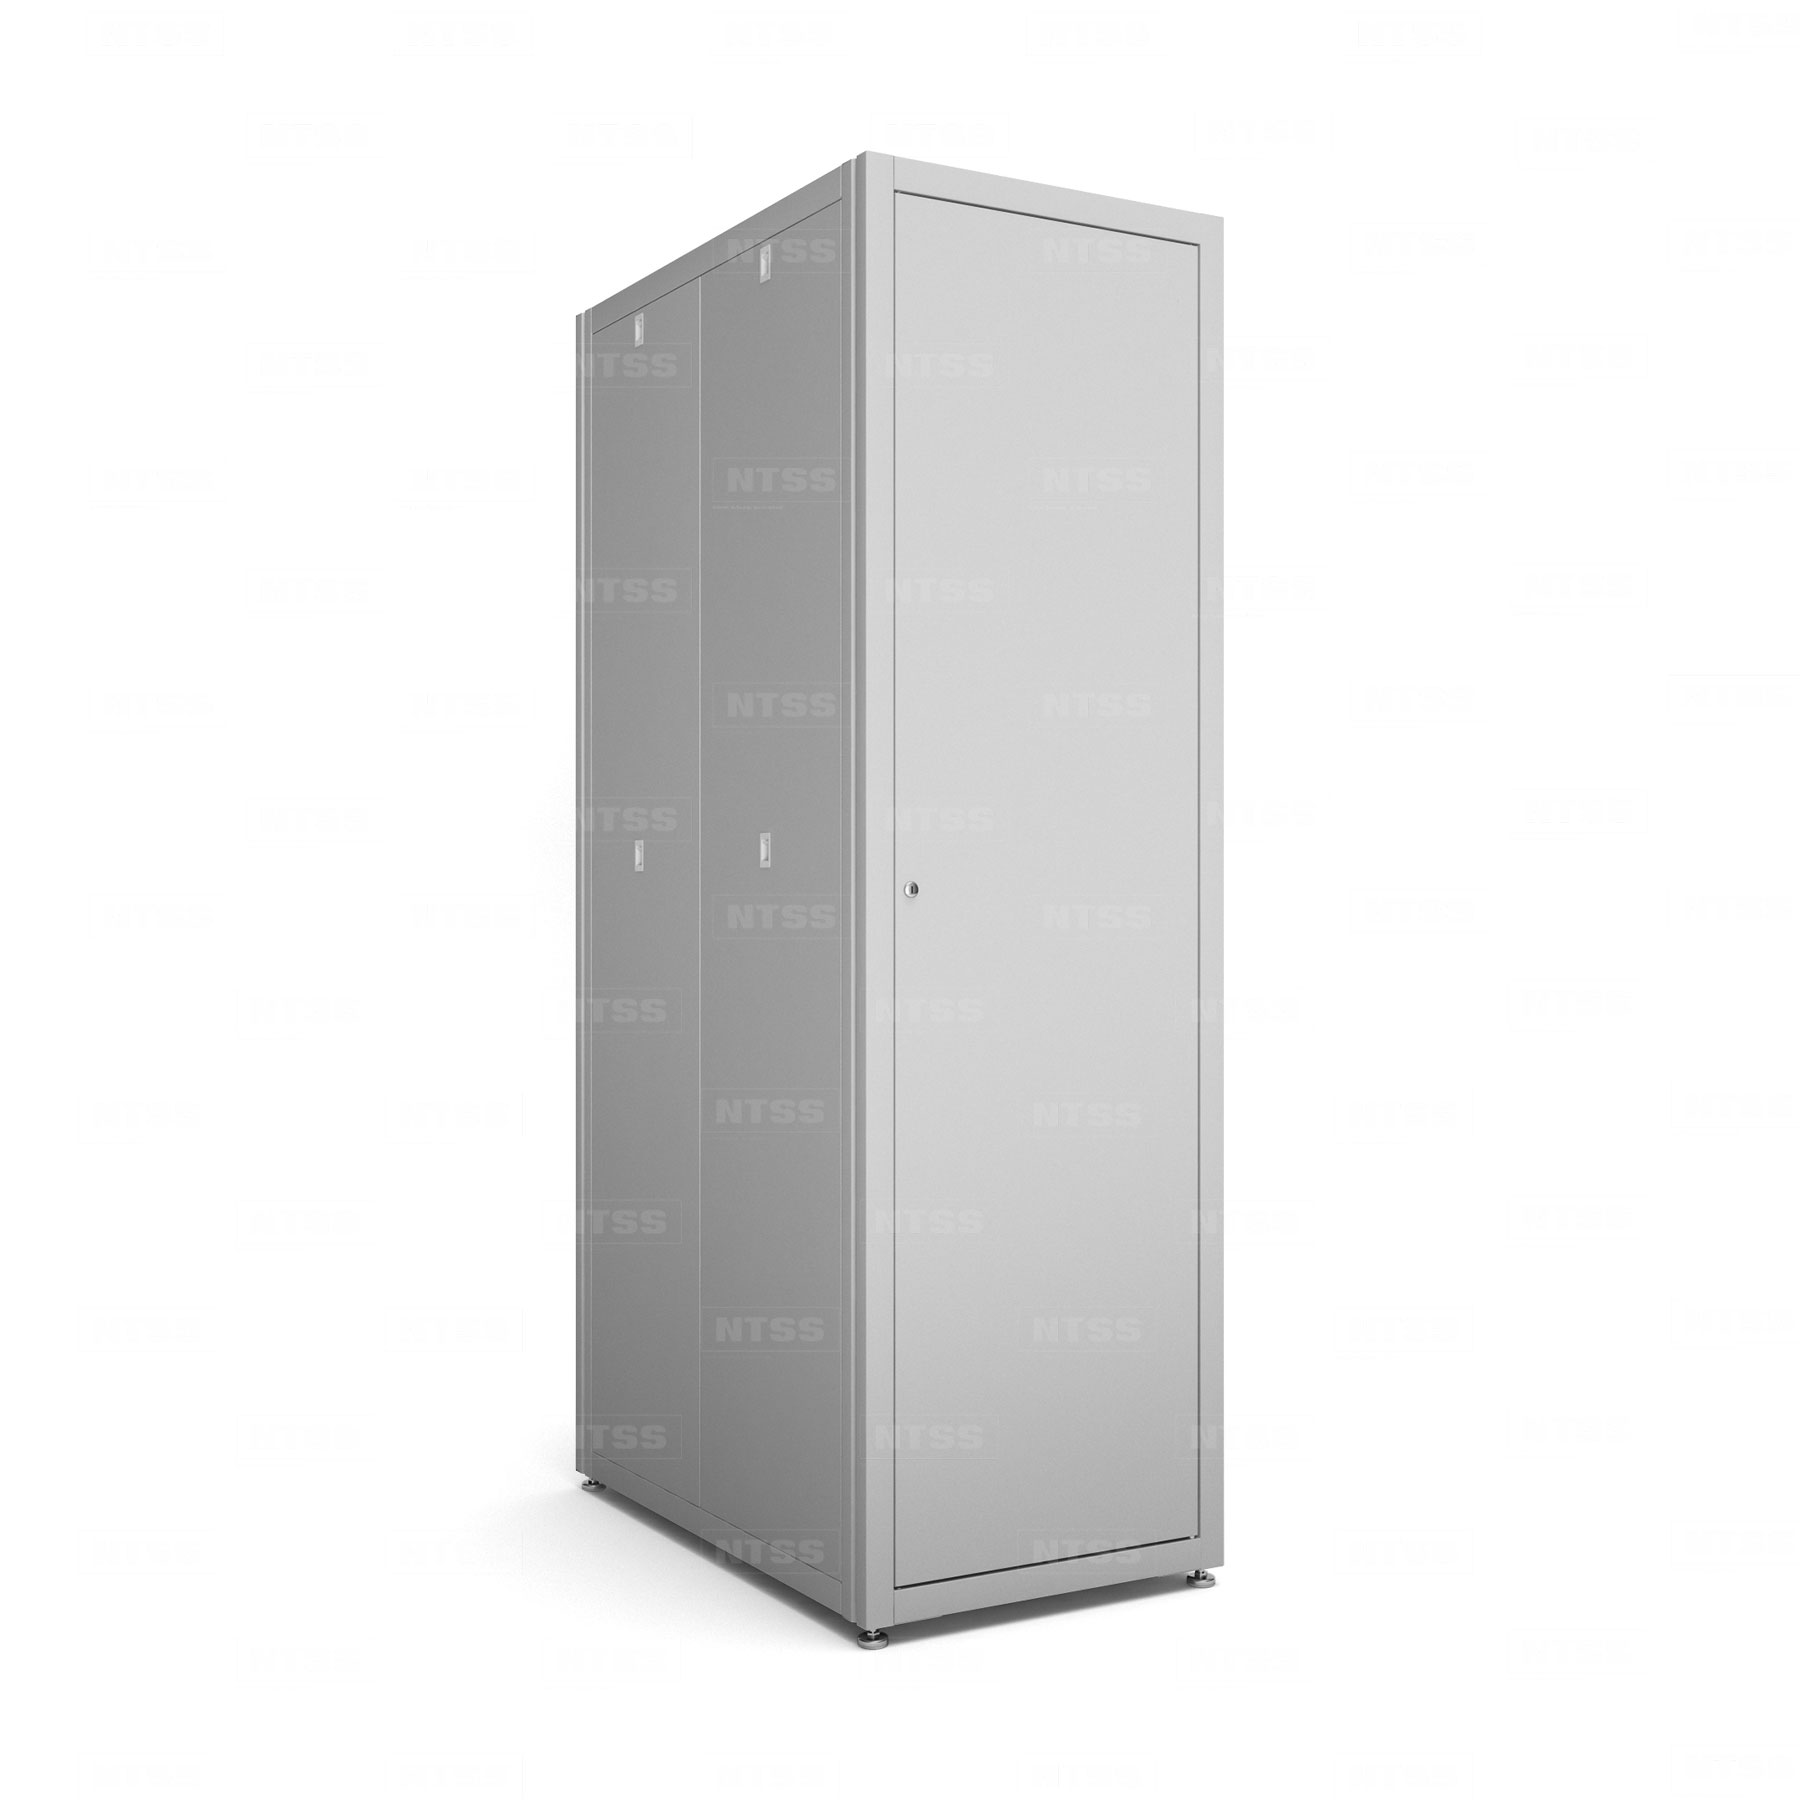 19" напольный шкаф "СТАНДАРТ" 47U 600x1000 мм, передняя дверь металл, боковые стенки съемные 